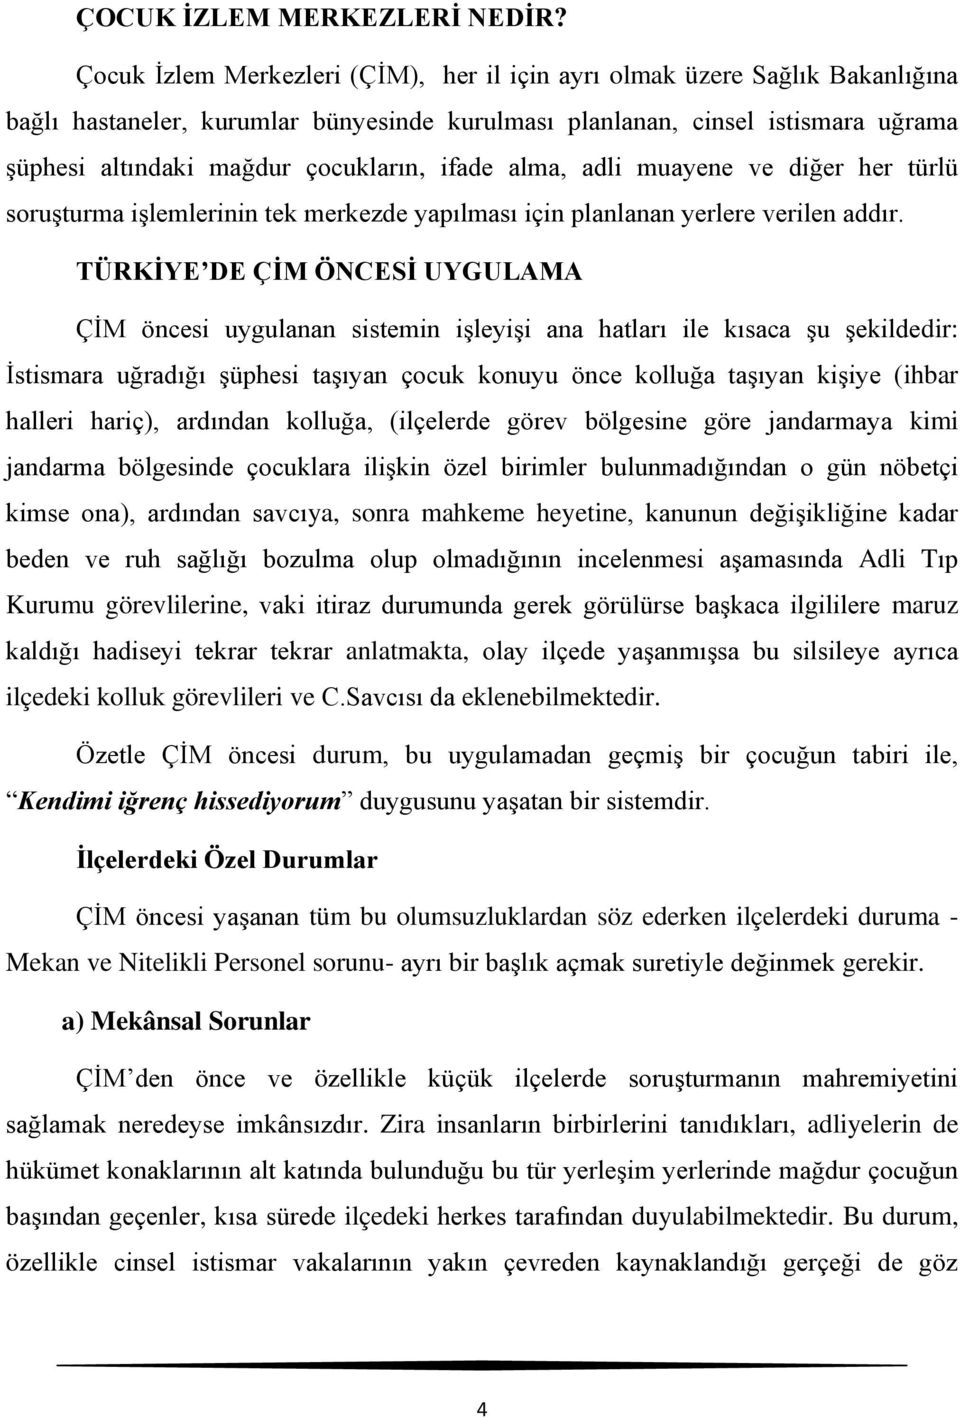 ÇOCUK İZLEM MERKEZLERİ. Türkiye Raporu - PDF Free Download